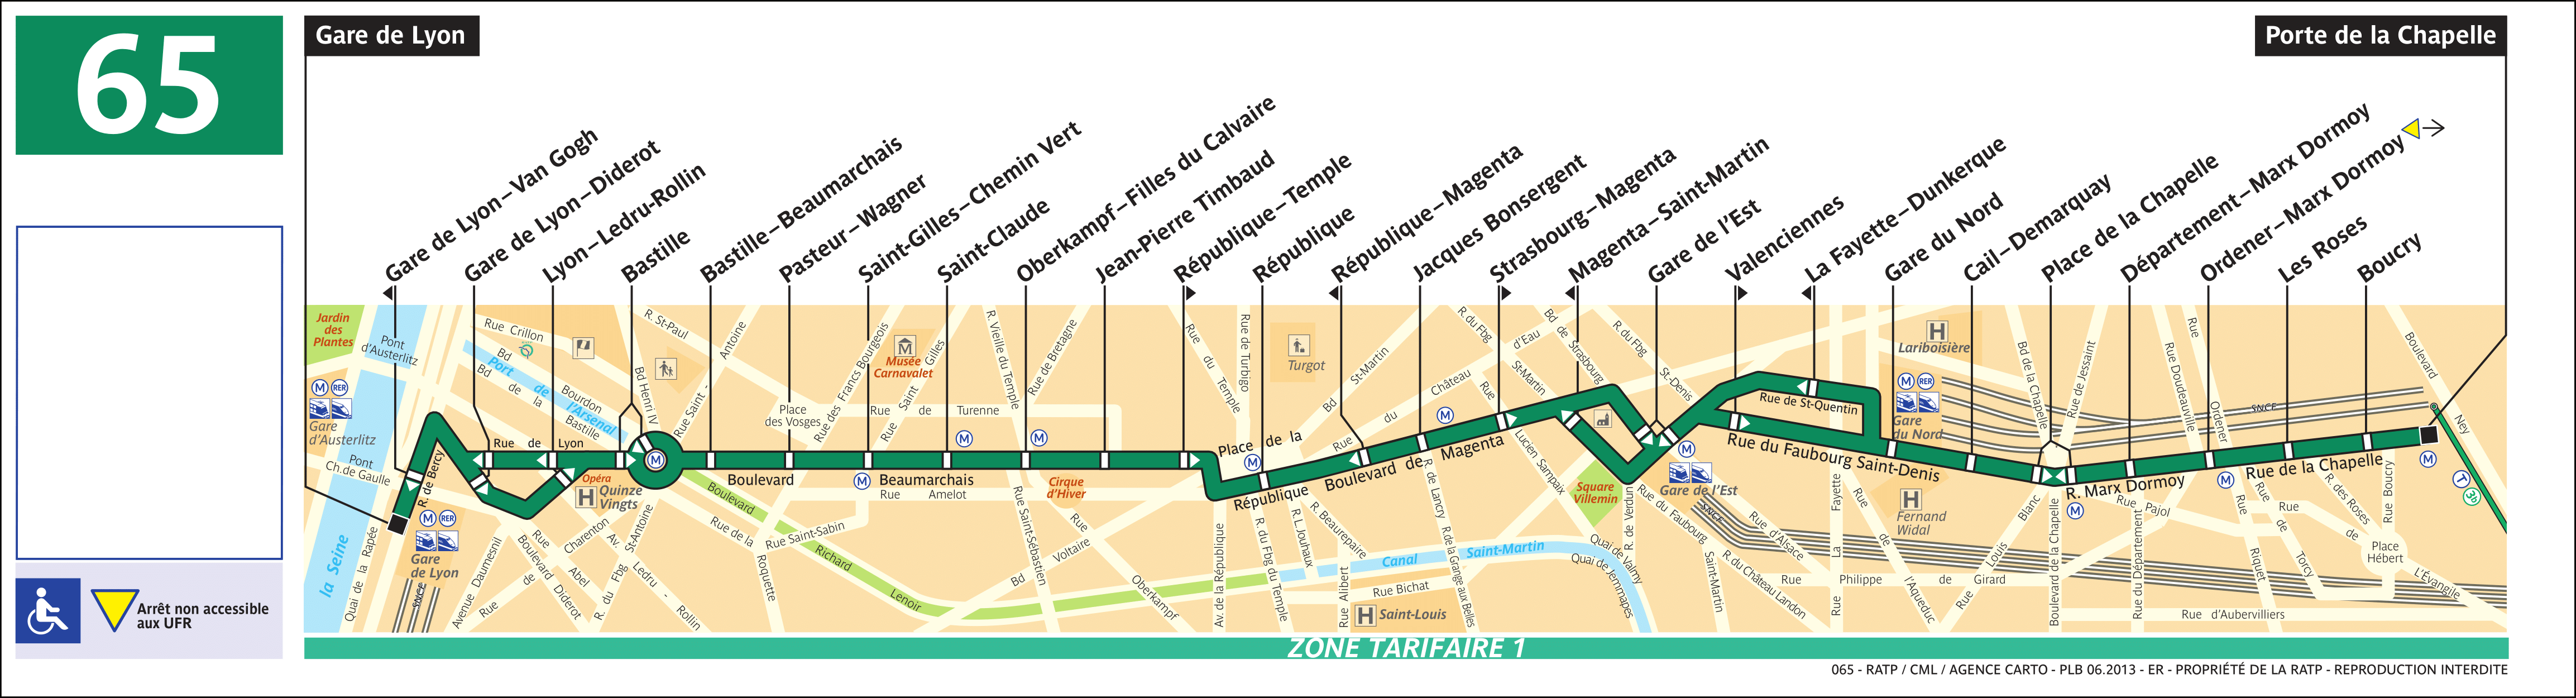 Автобус 65 маршрут на карте